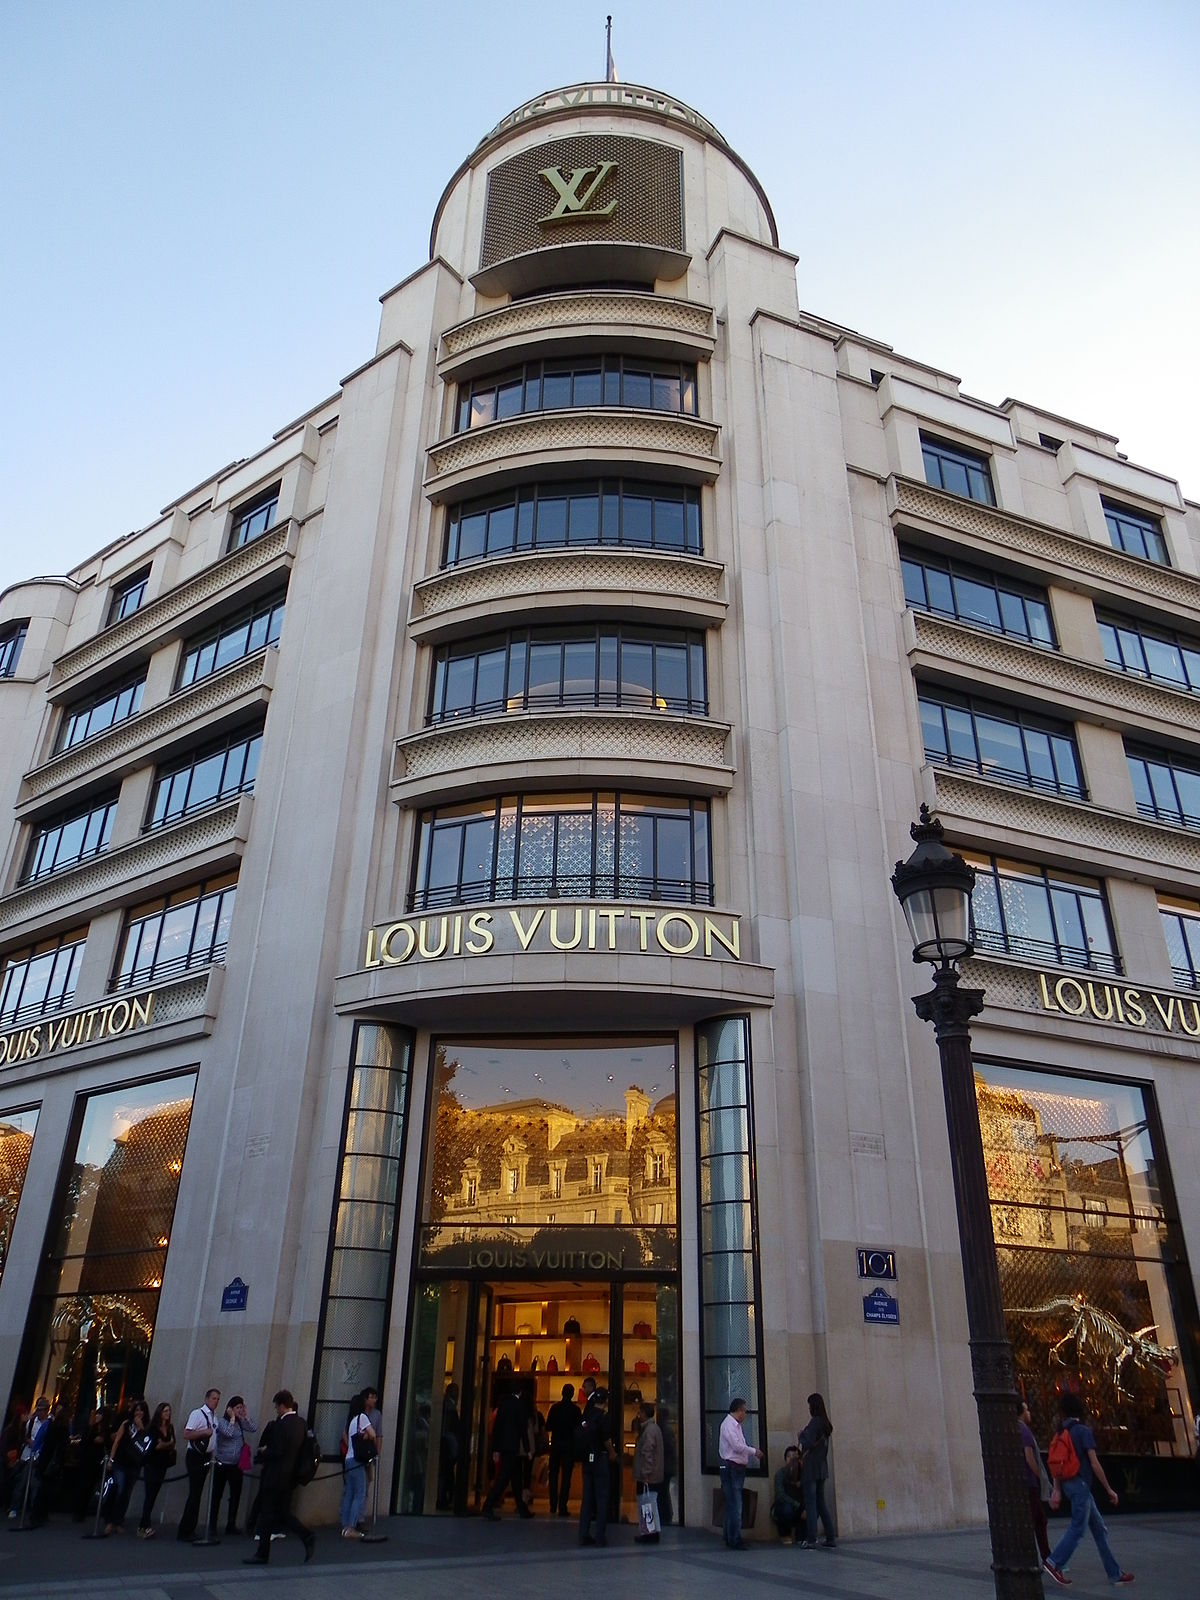 Louis Vuitton Champs Elysees Paris Opening Hours